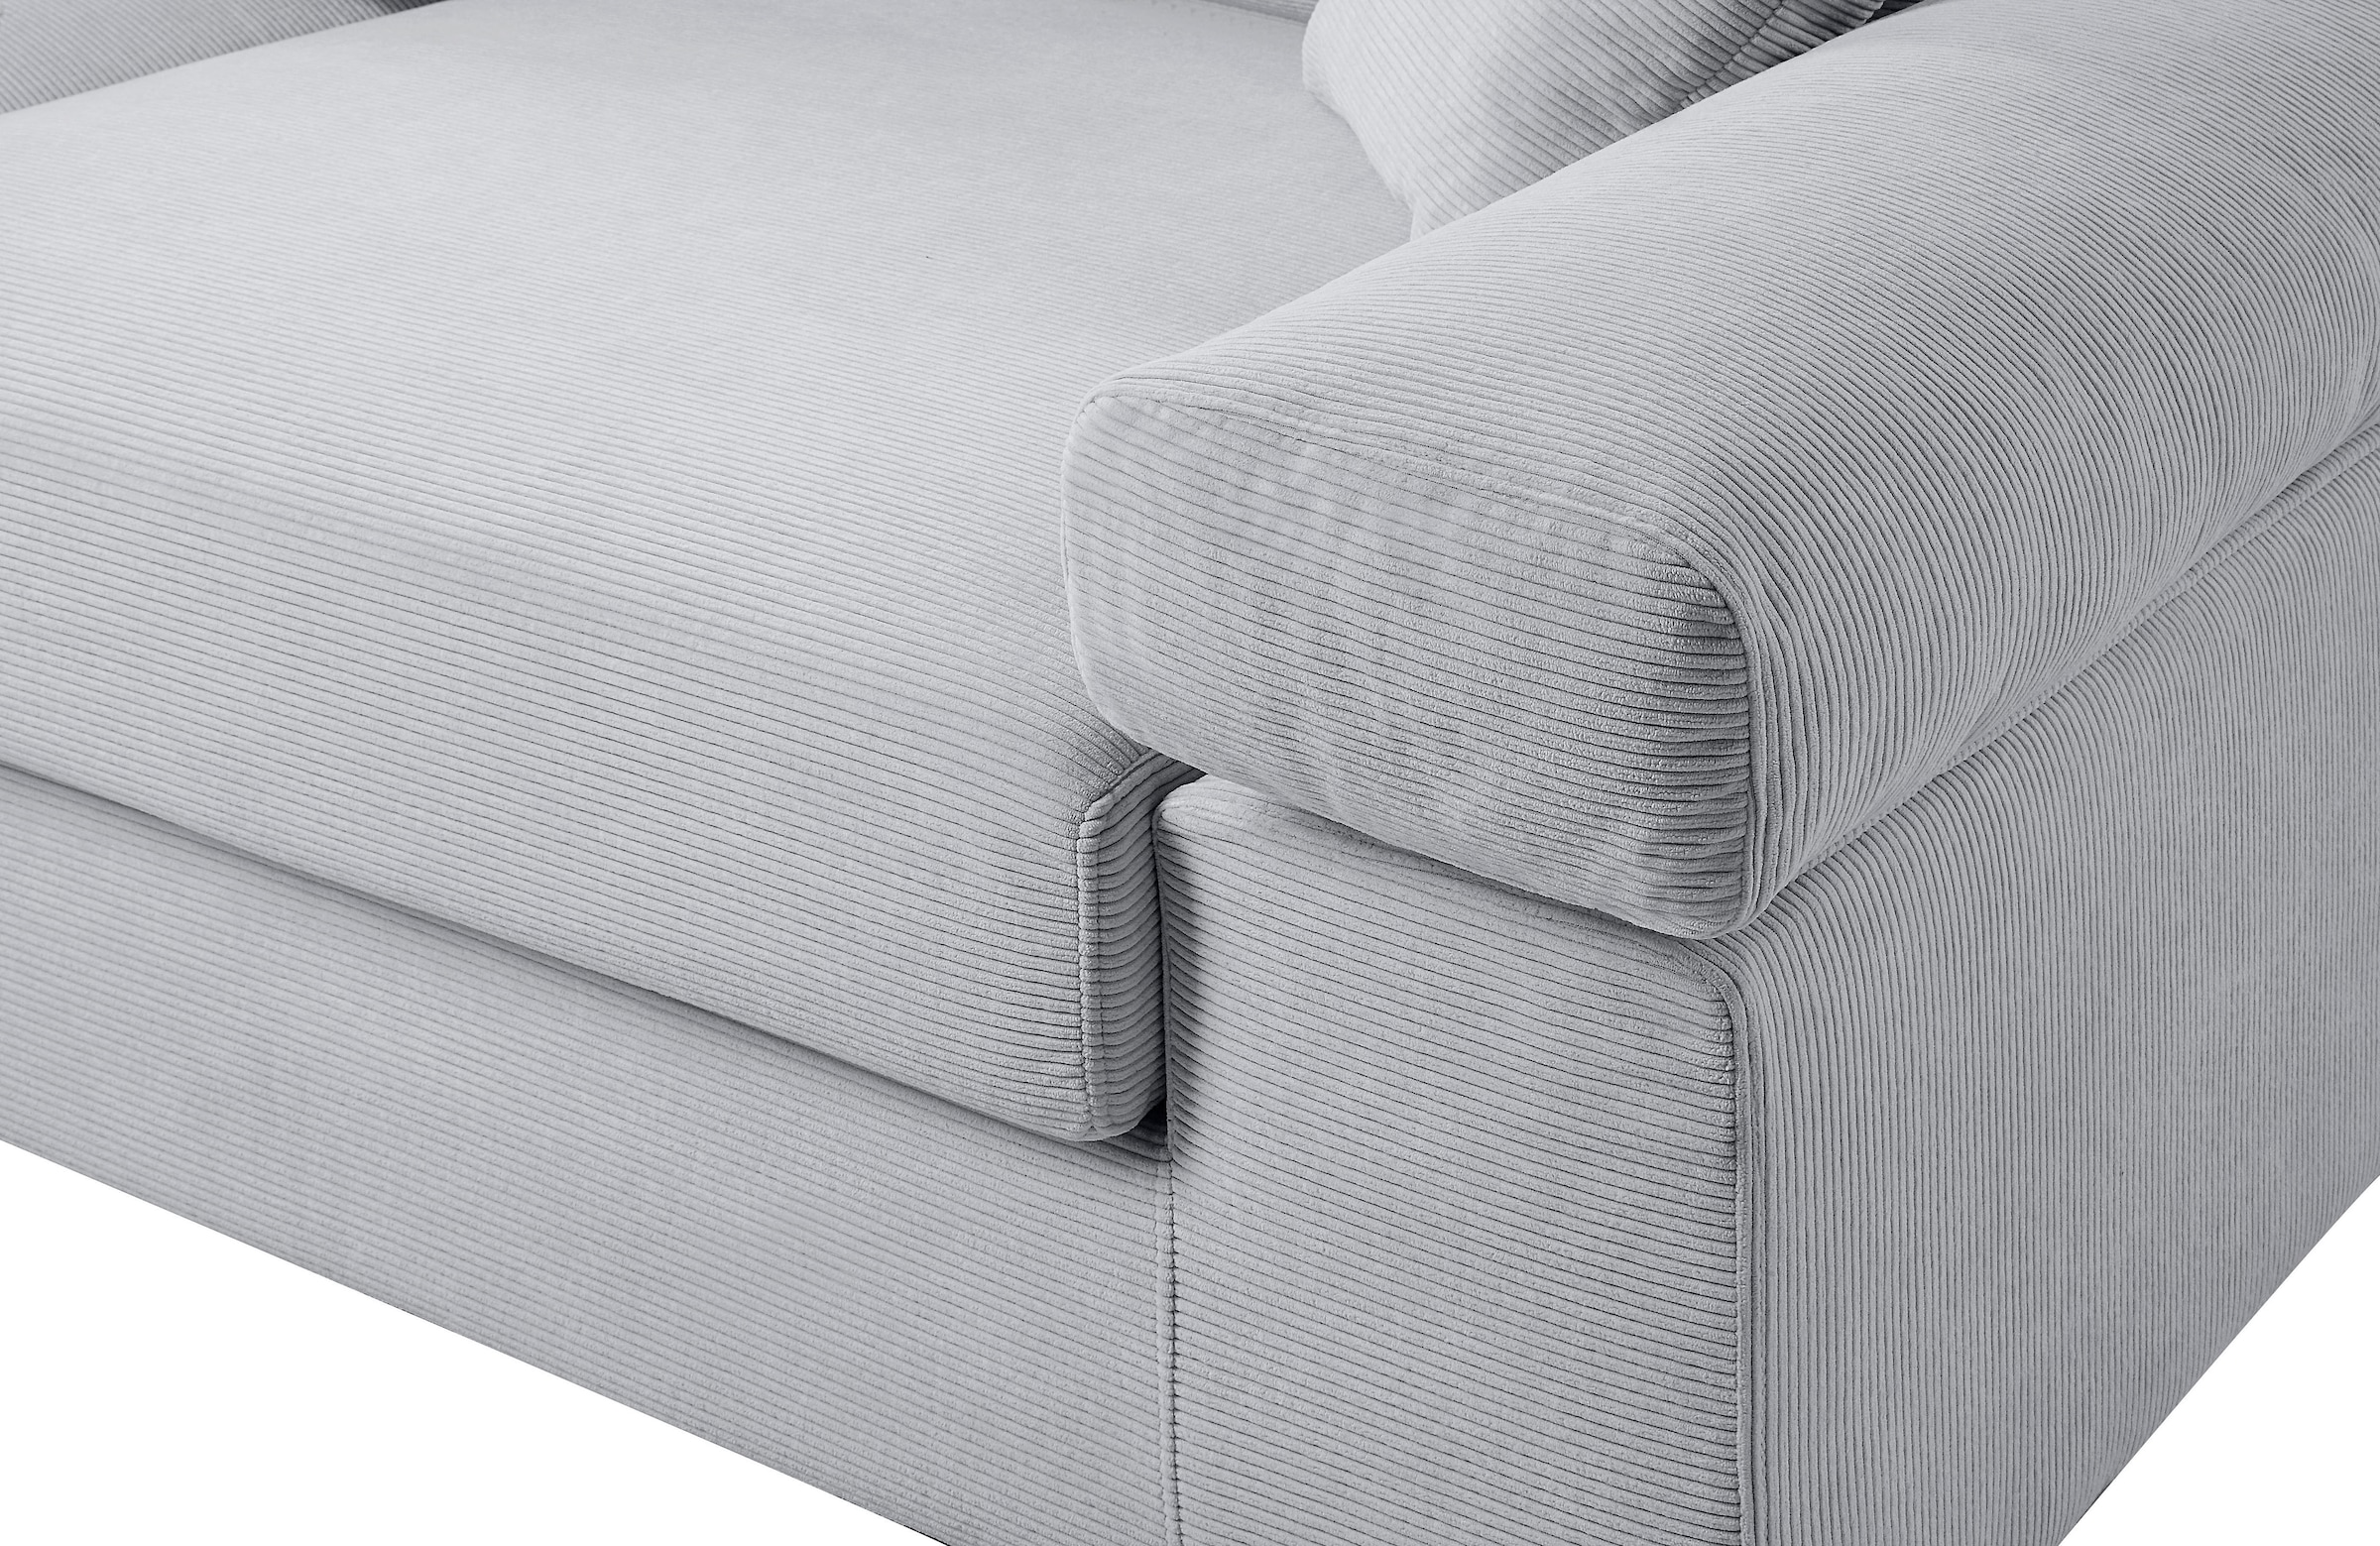 ATLANTIC home collection Big-Sofa, mit Cord-Bezug, XXL-Sitzfläche, mit  Federkern, frei im Raum stellbar bestellen | BAUR